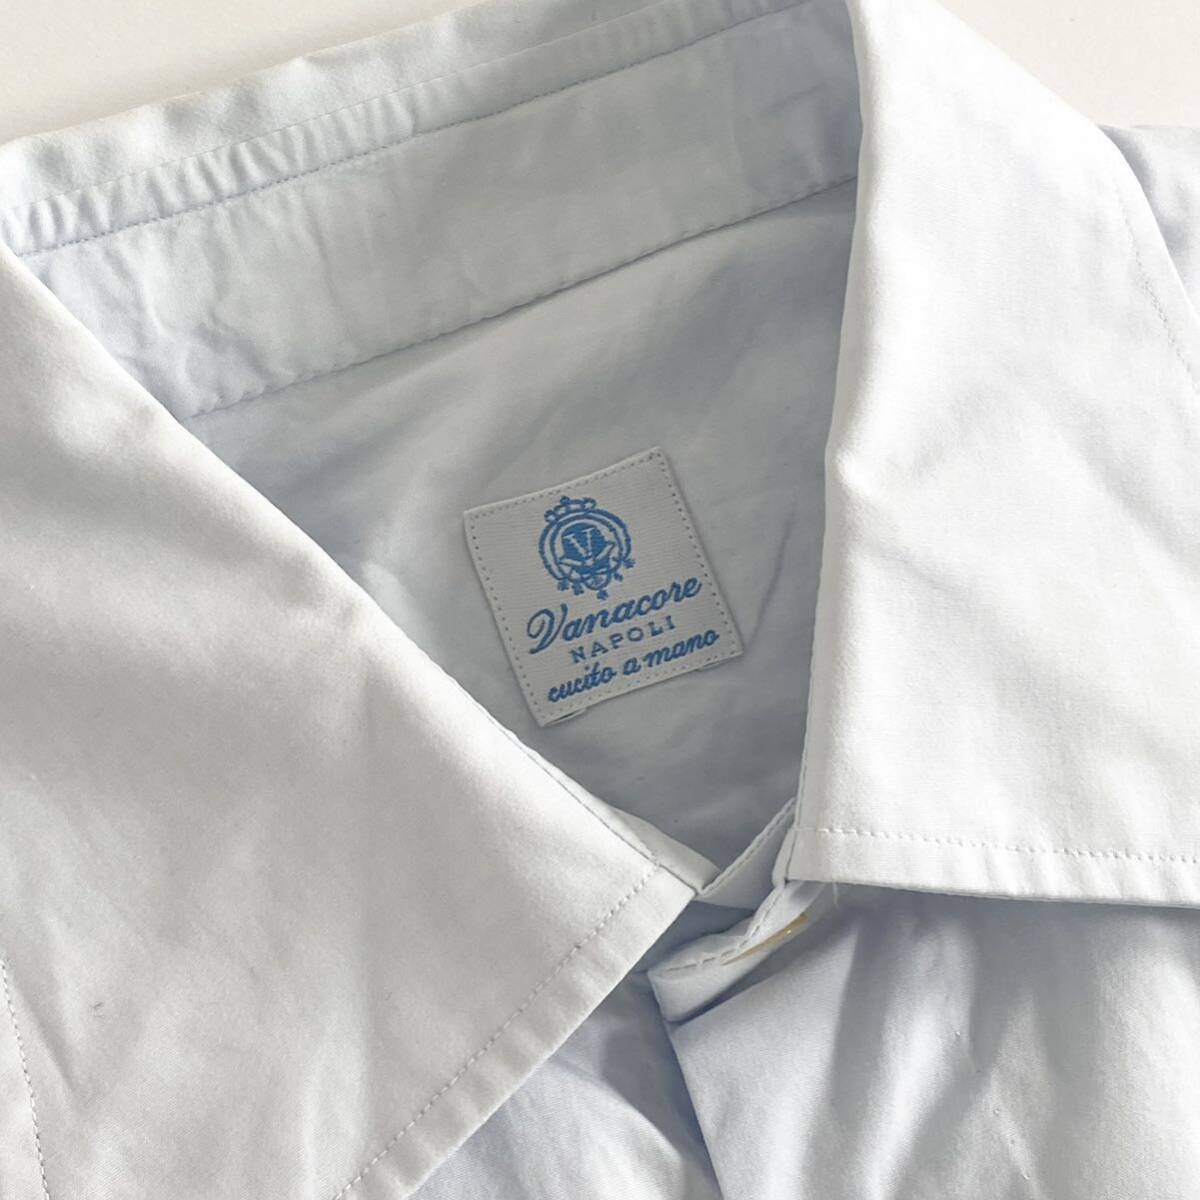 Id15 イタリア製 大きいサイズ Vanacore NAPOLI ヴァナコーレ コットンシャツ ドレスシャツ 無地 ライトブルー 清涼感☆ メンズ 紳士服_画像5